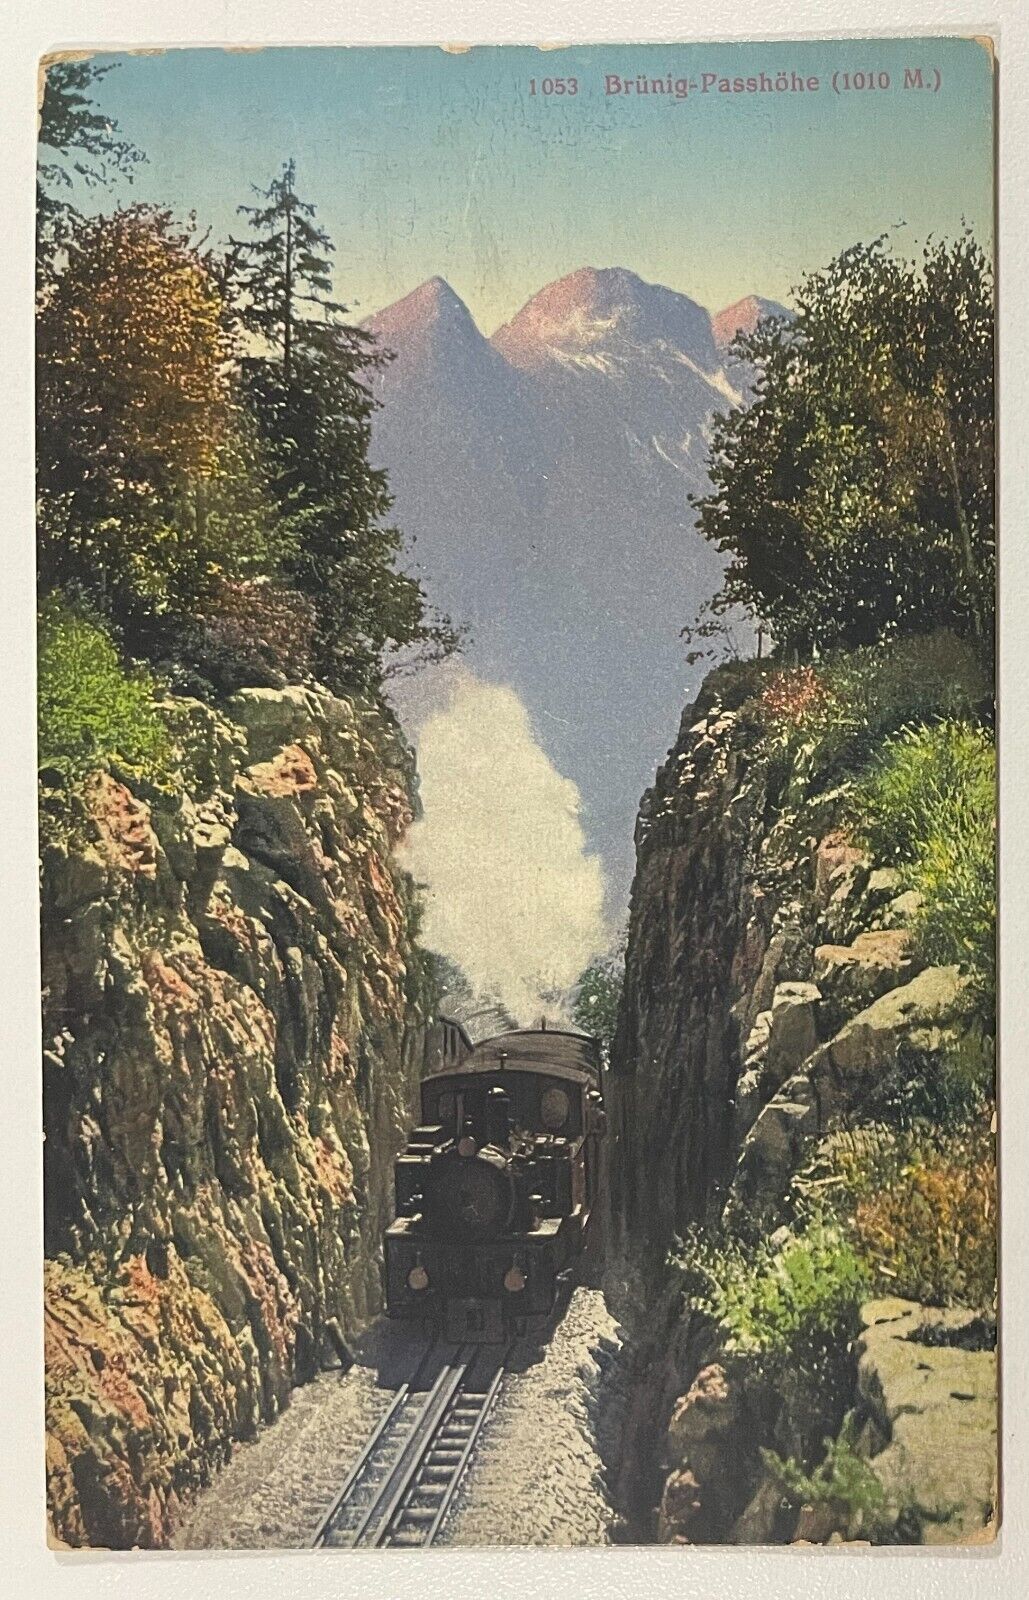 Brunig Pass Train Postcard Switzerland VTG